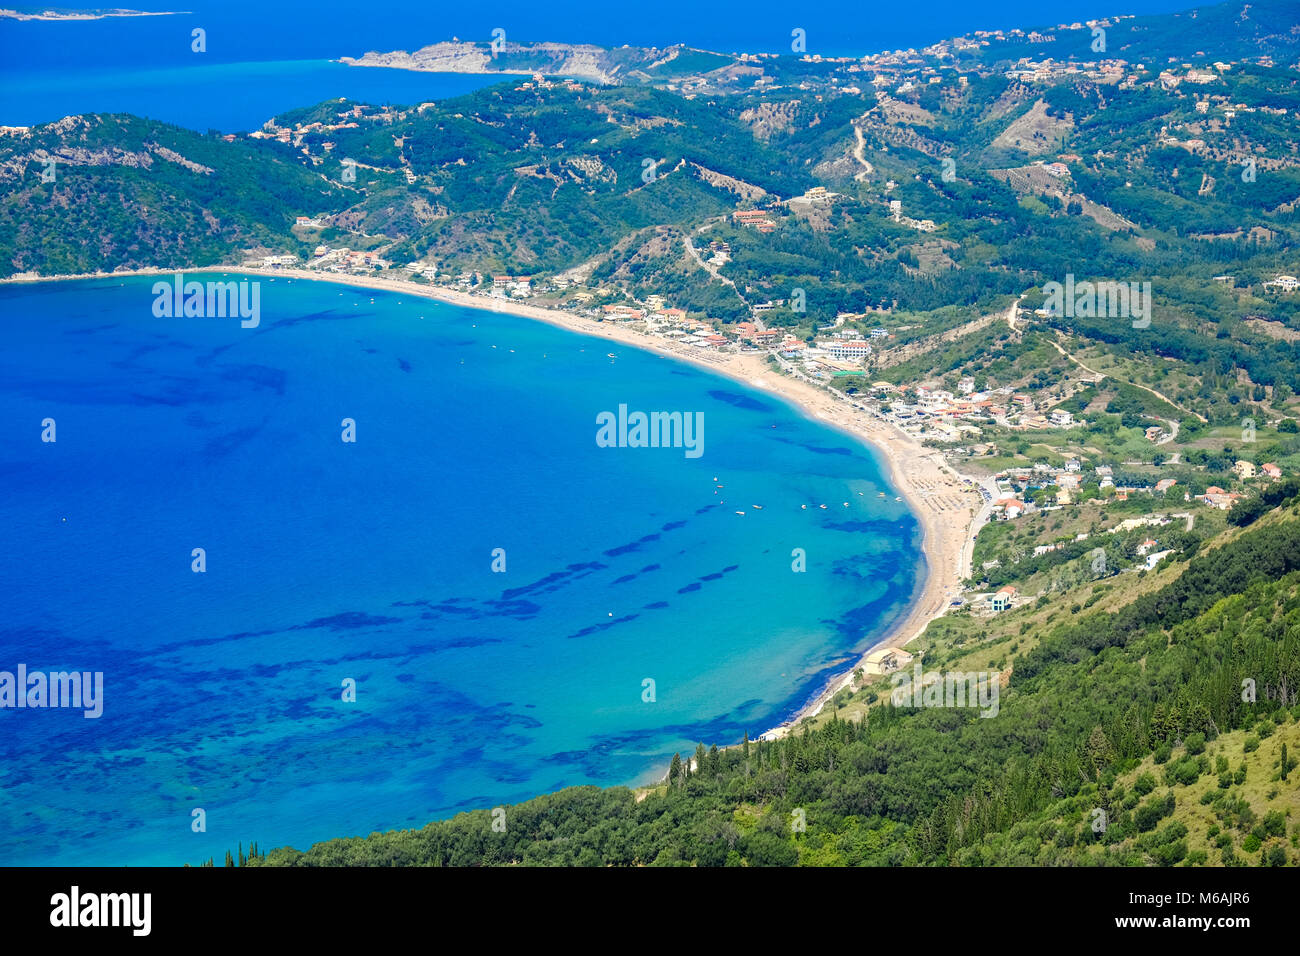 L'isola di Corfù panorama dall'alto. Corfù spiaggia costa birds eye view Foto Stock